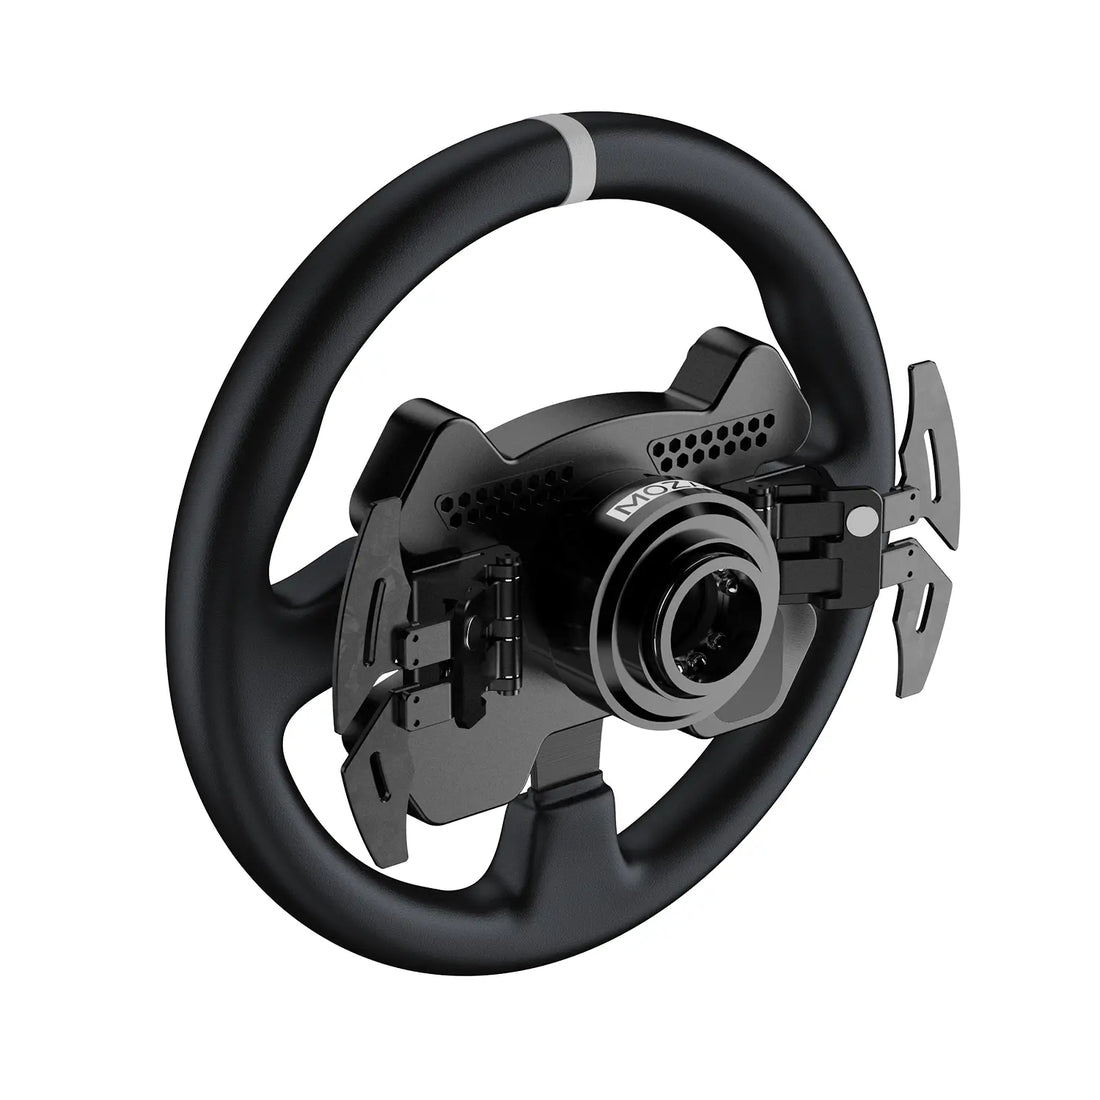 Moza CS Steering Wheel V2